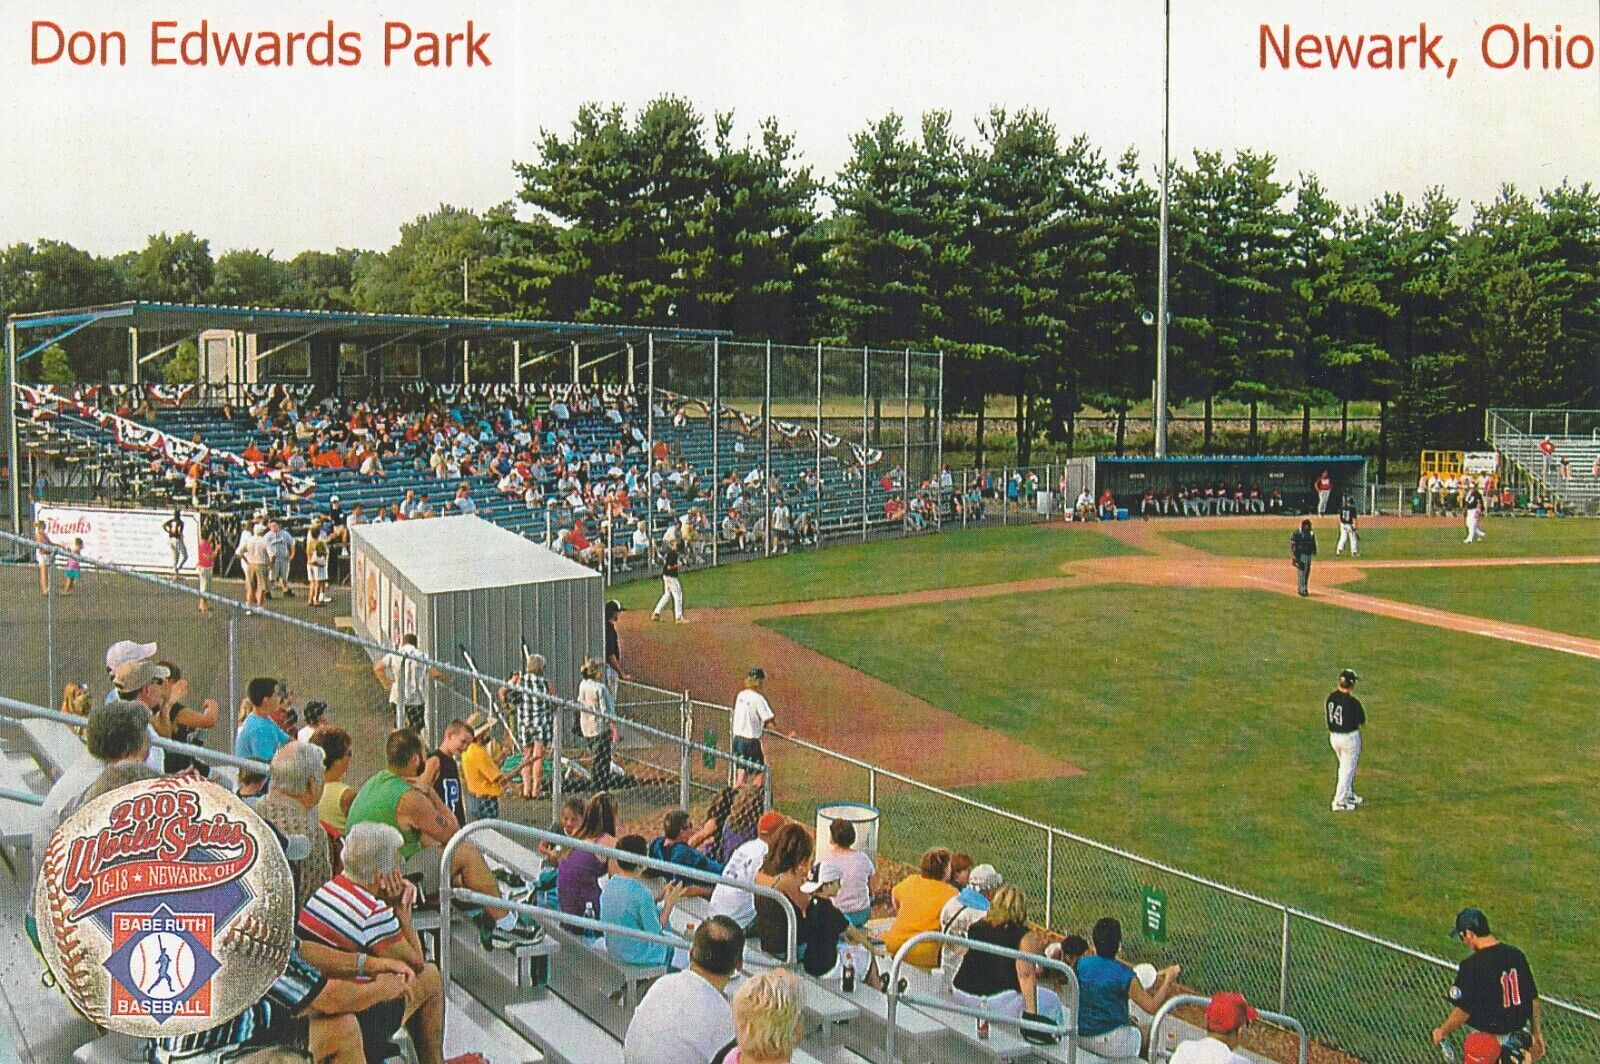 Newark Ohio's Don Edwards Park Baseball Stadium Postcard - Privately Published